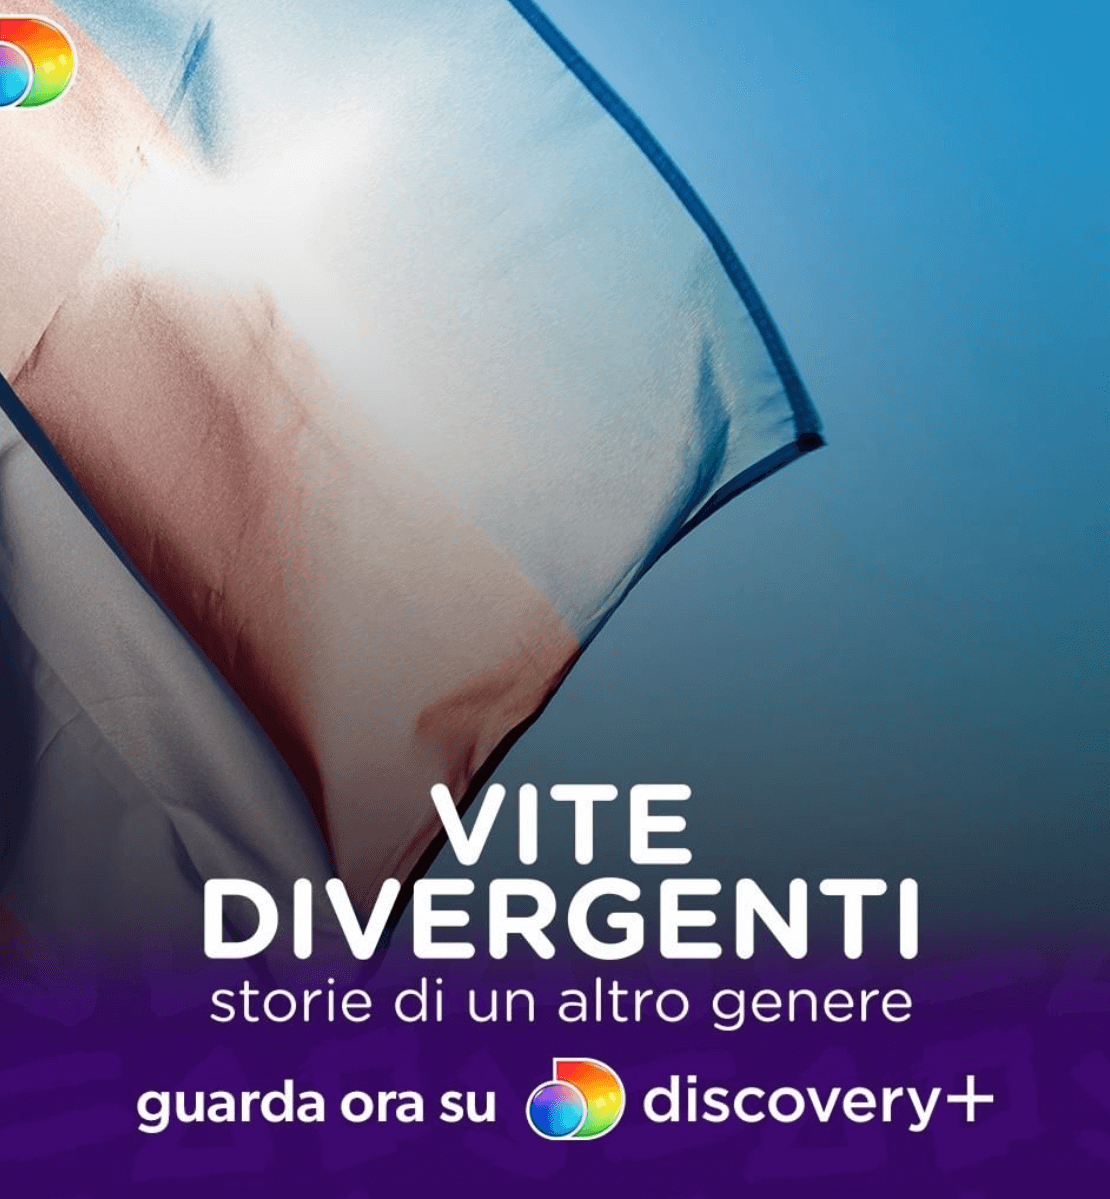 Discovery+ celebra il Pride Month con Pride, un canale per promuovere e raccontare storie di inclusione - Vite Divergenti - Gay.it